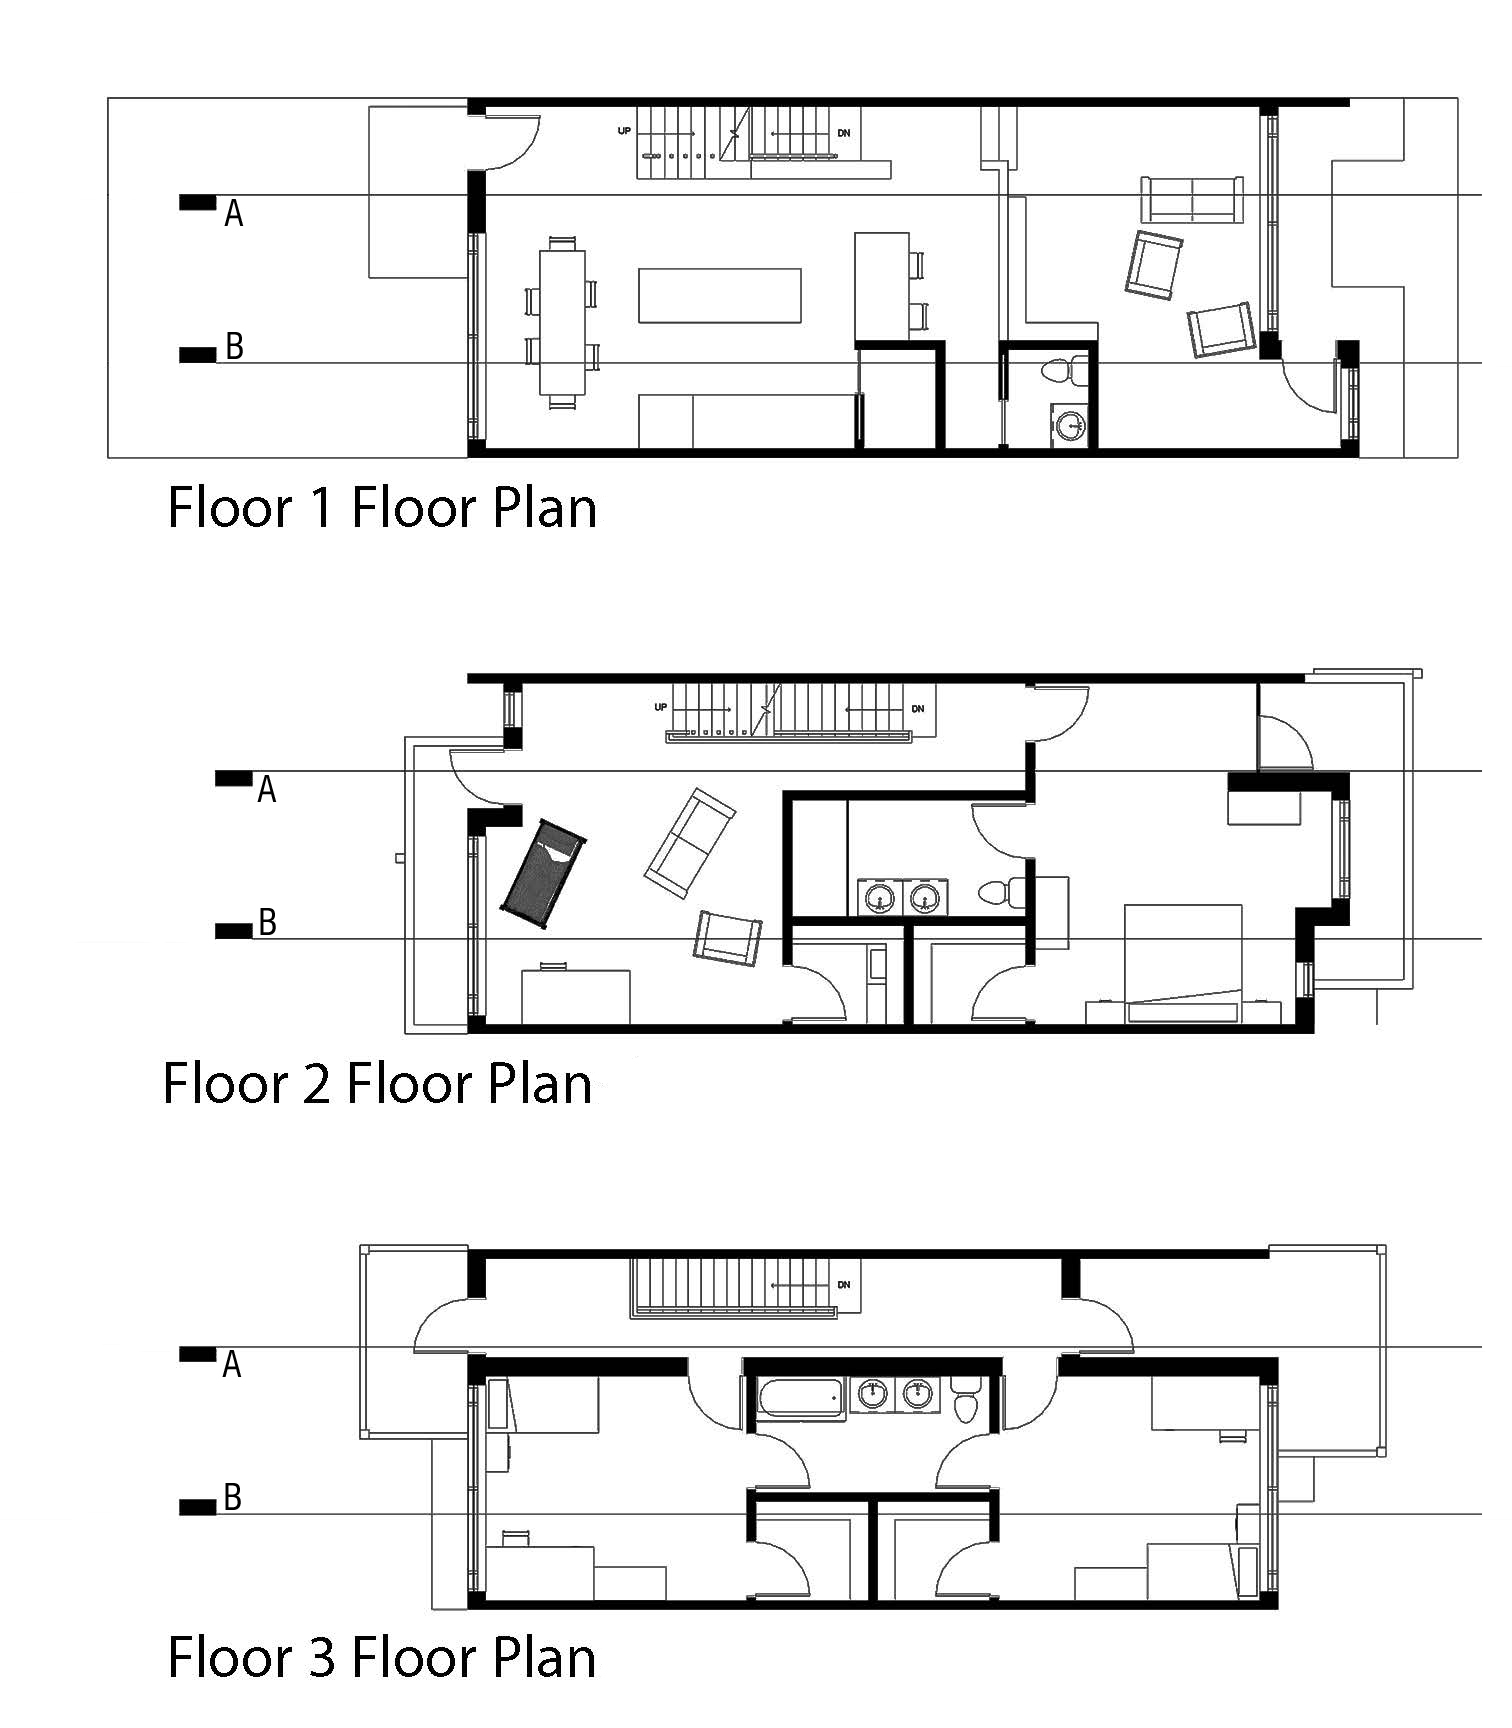 Floor plans || Revit, Photoshop